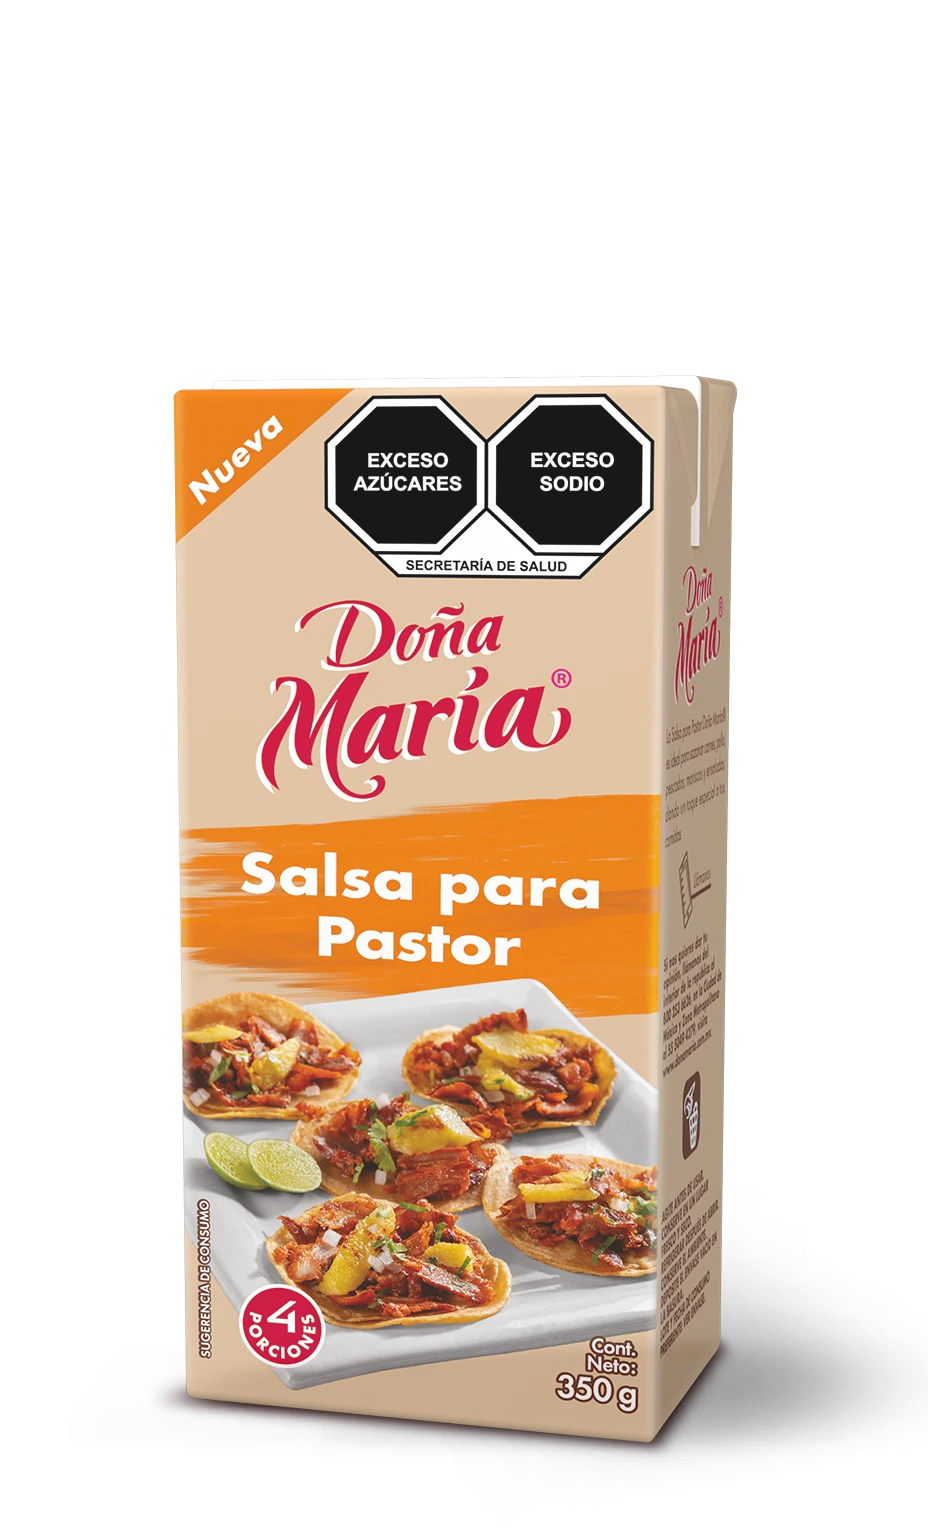 Product Pastor Doña María ®